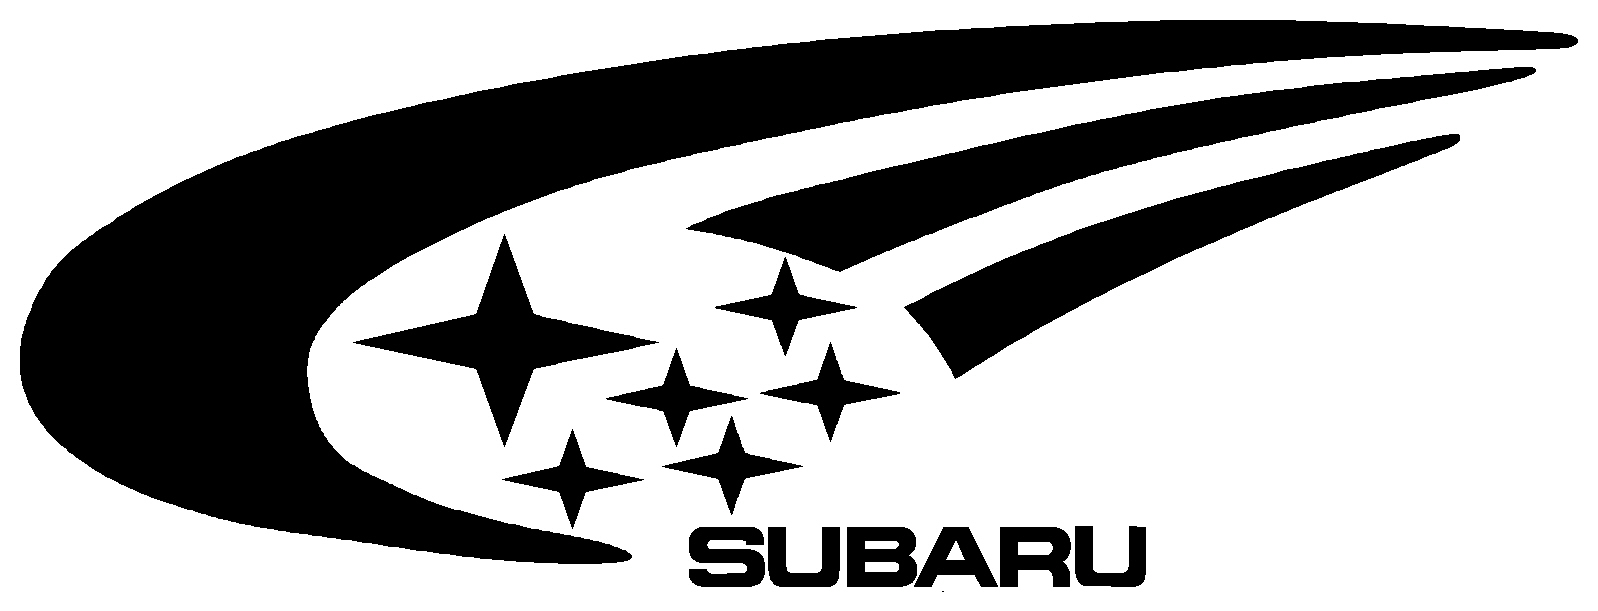 Subaru Rally Logo - Subaru star Logos